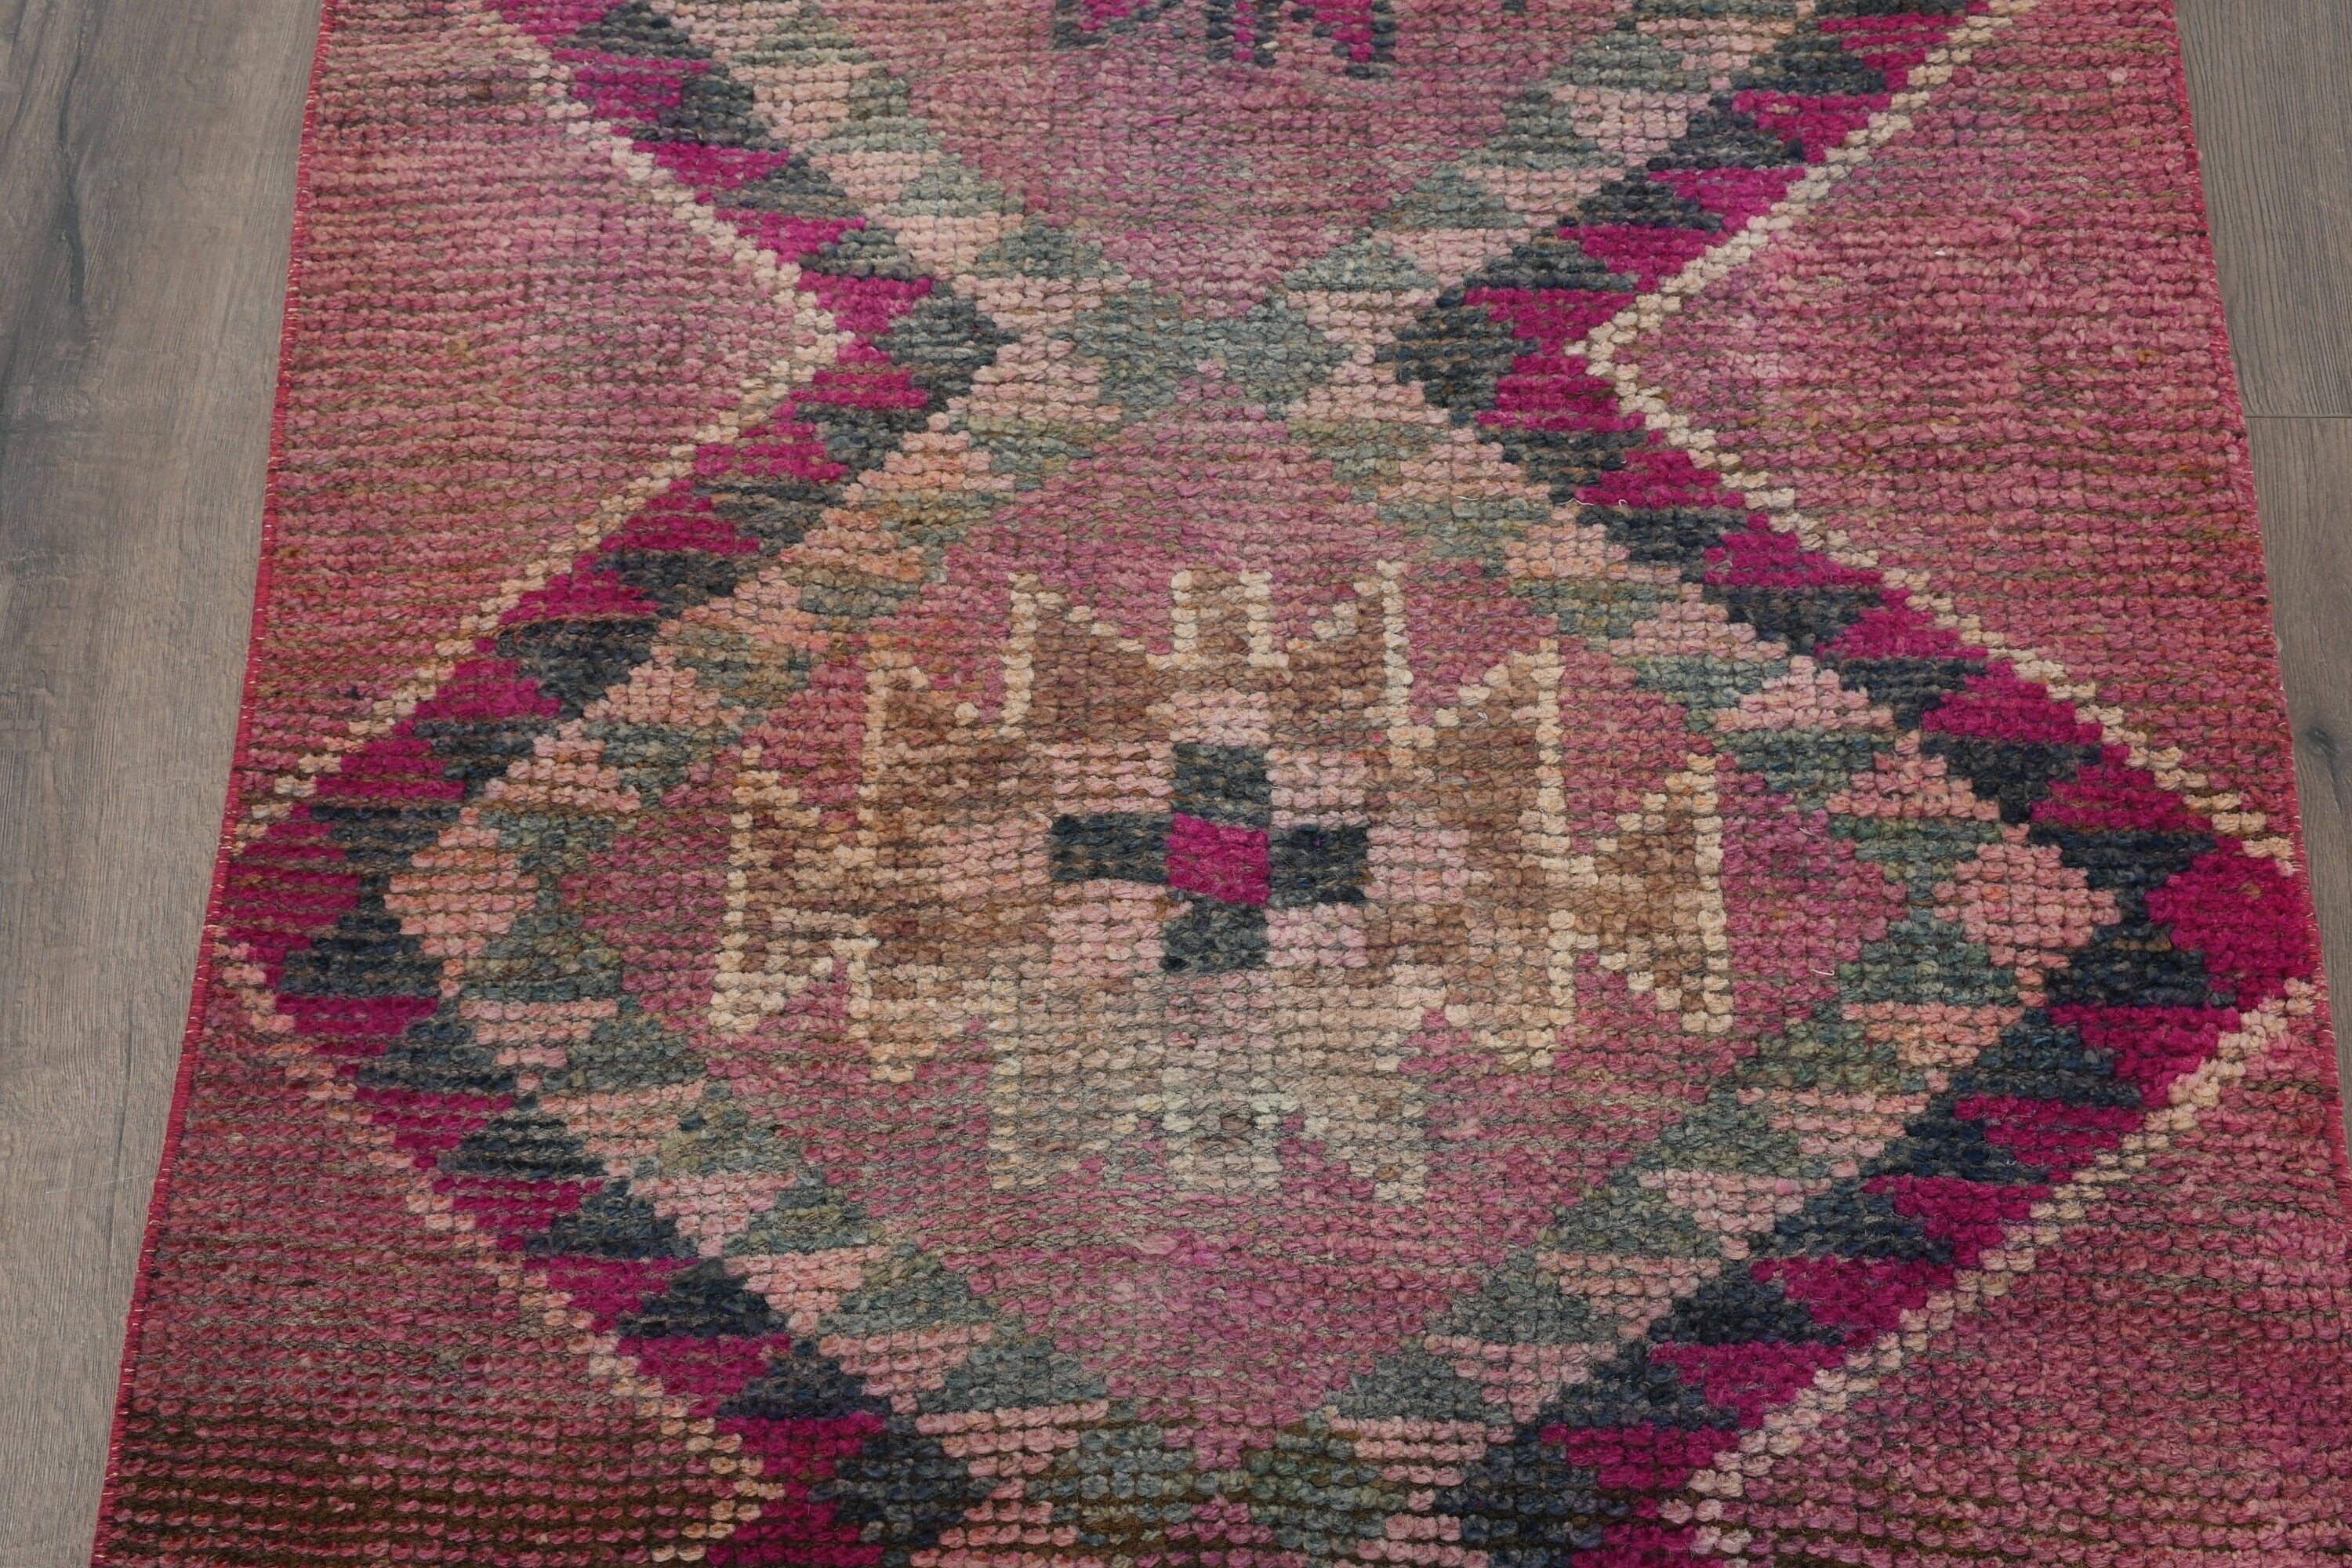 Pink Antique Rug, Corridor Rugs, Rugs for Runner, 2.9x10.5 ft Runner Rug, Antique Rug, Turkish Rug, Cool Rugs, Vintage Rug, Hallway Rug